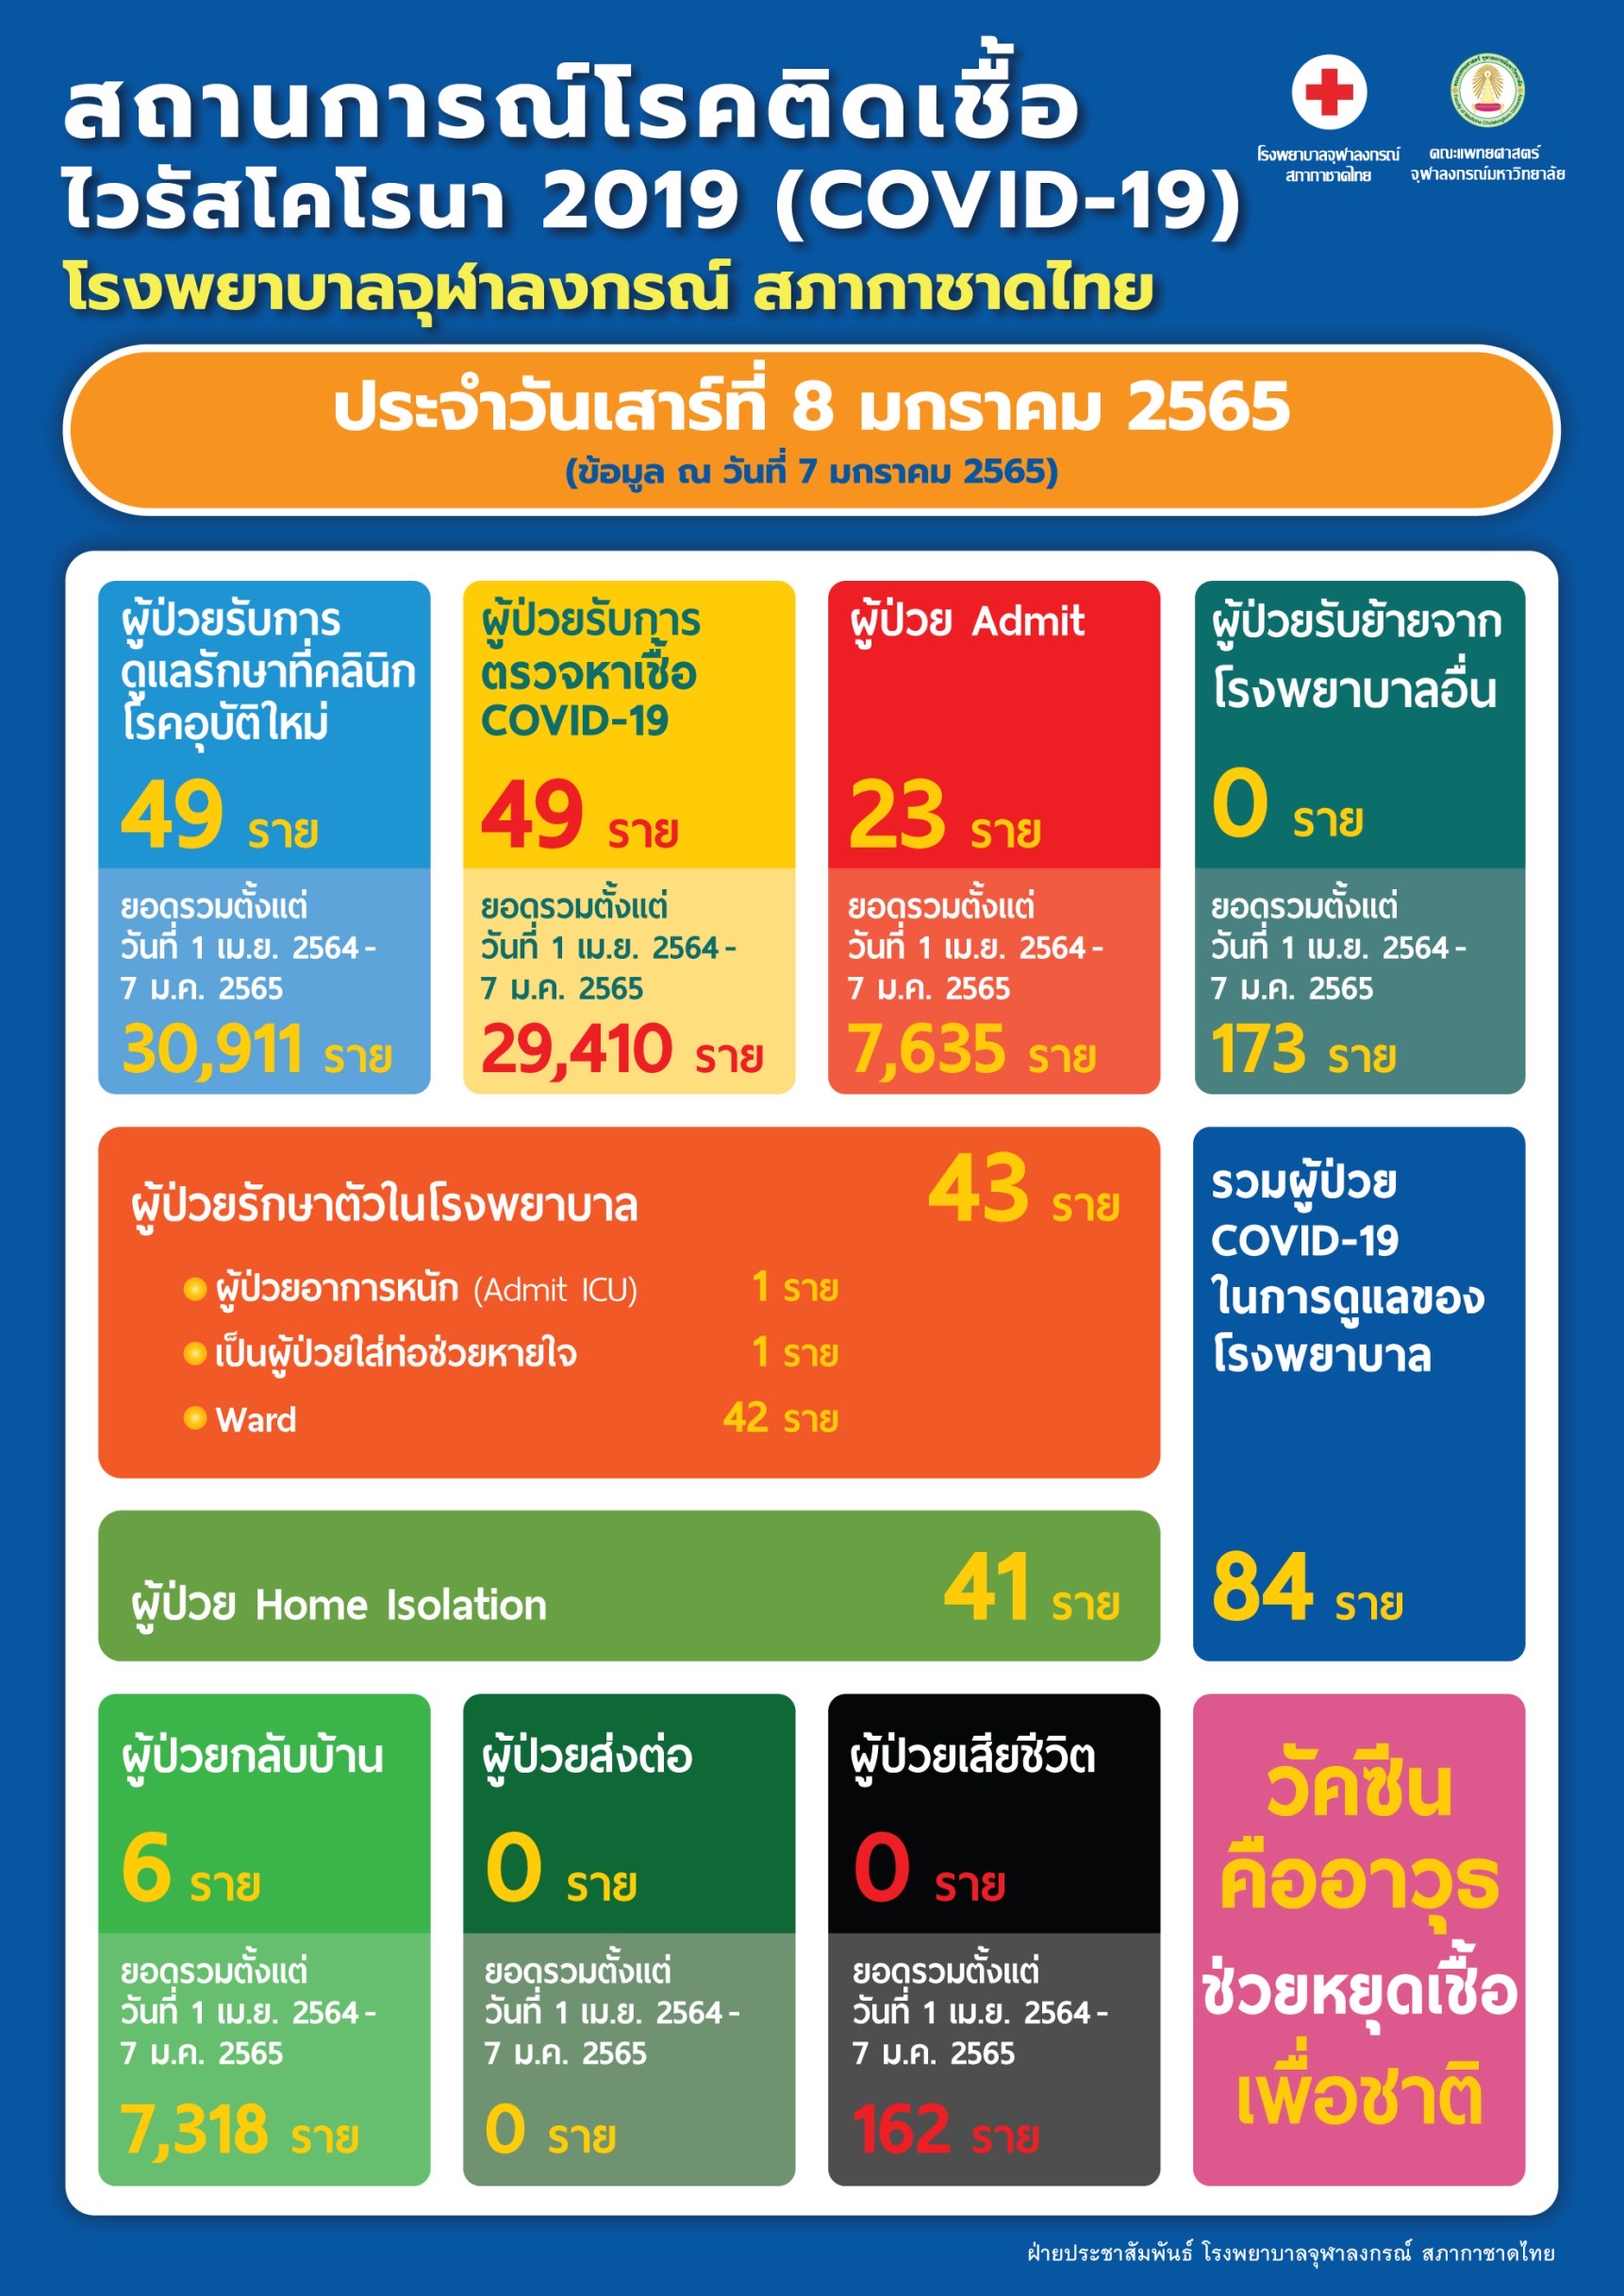 สถานการณ์โรคติดเชื้อ ไวรัสโคโรนา 2019 (COVID-19) โรงพยาบาลจุฬาลงกรณ์ สภากาชาดไทย ประจำวันเสาร์ที่ 8 มกราคม 2565